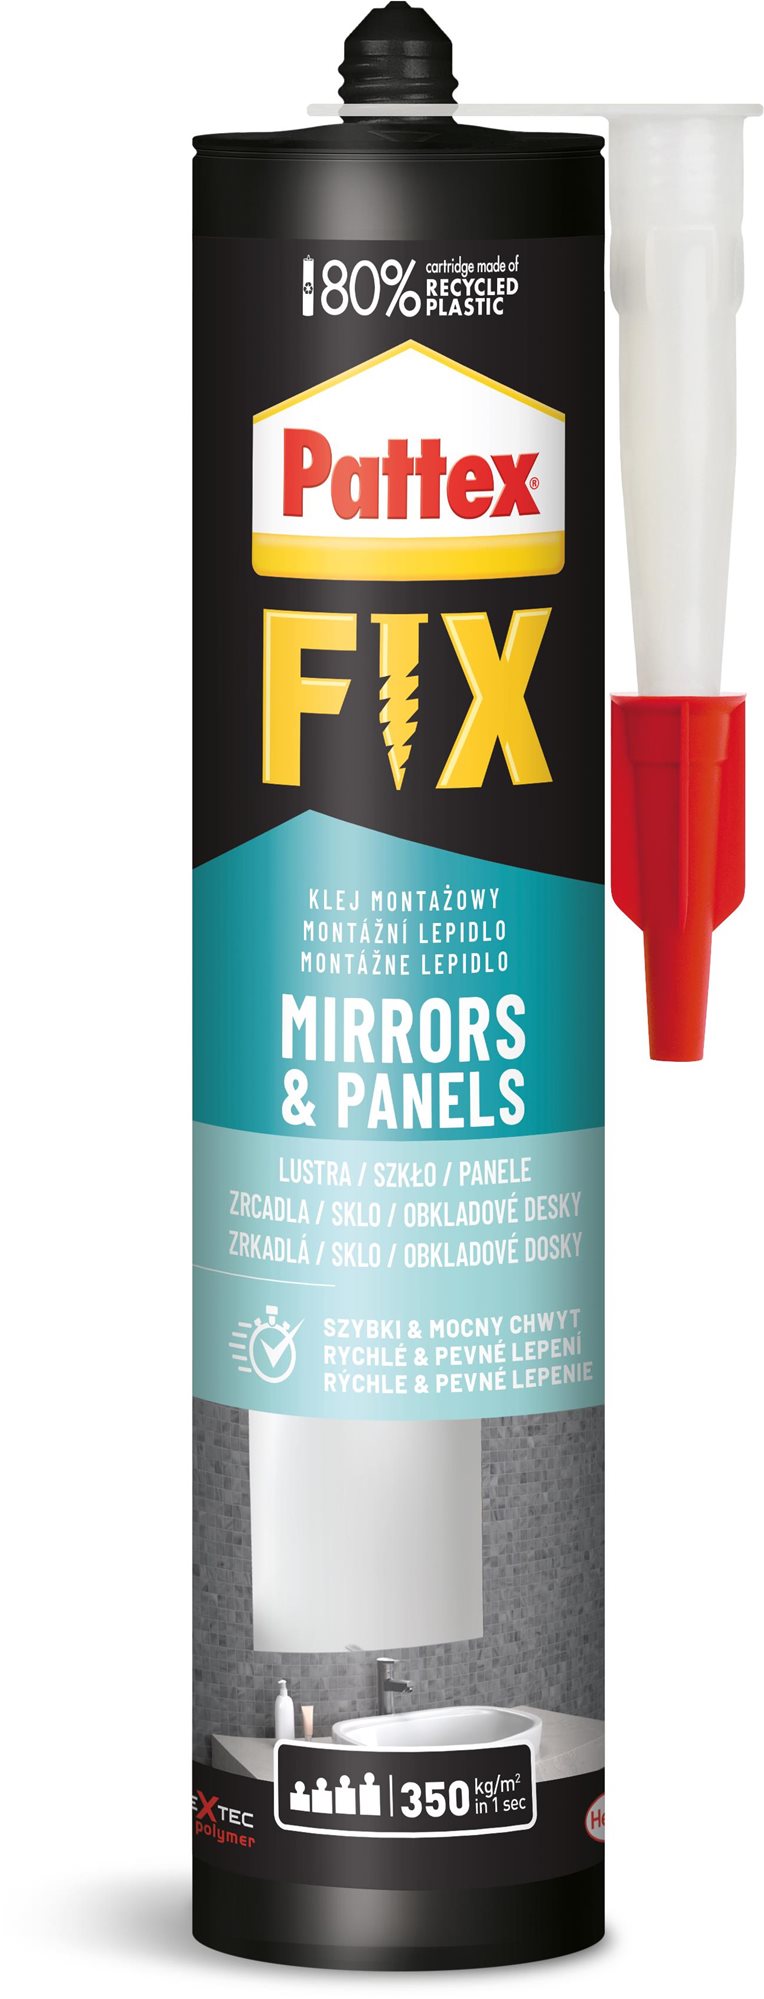 PATTEX FIX Mirrors & Panels (tükrök & panelek) 440 g